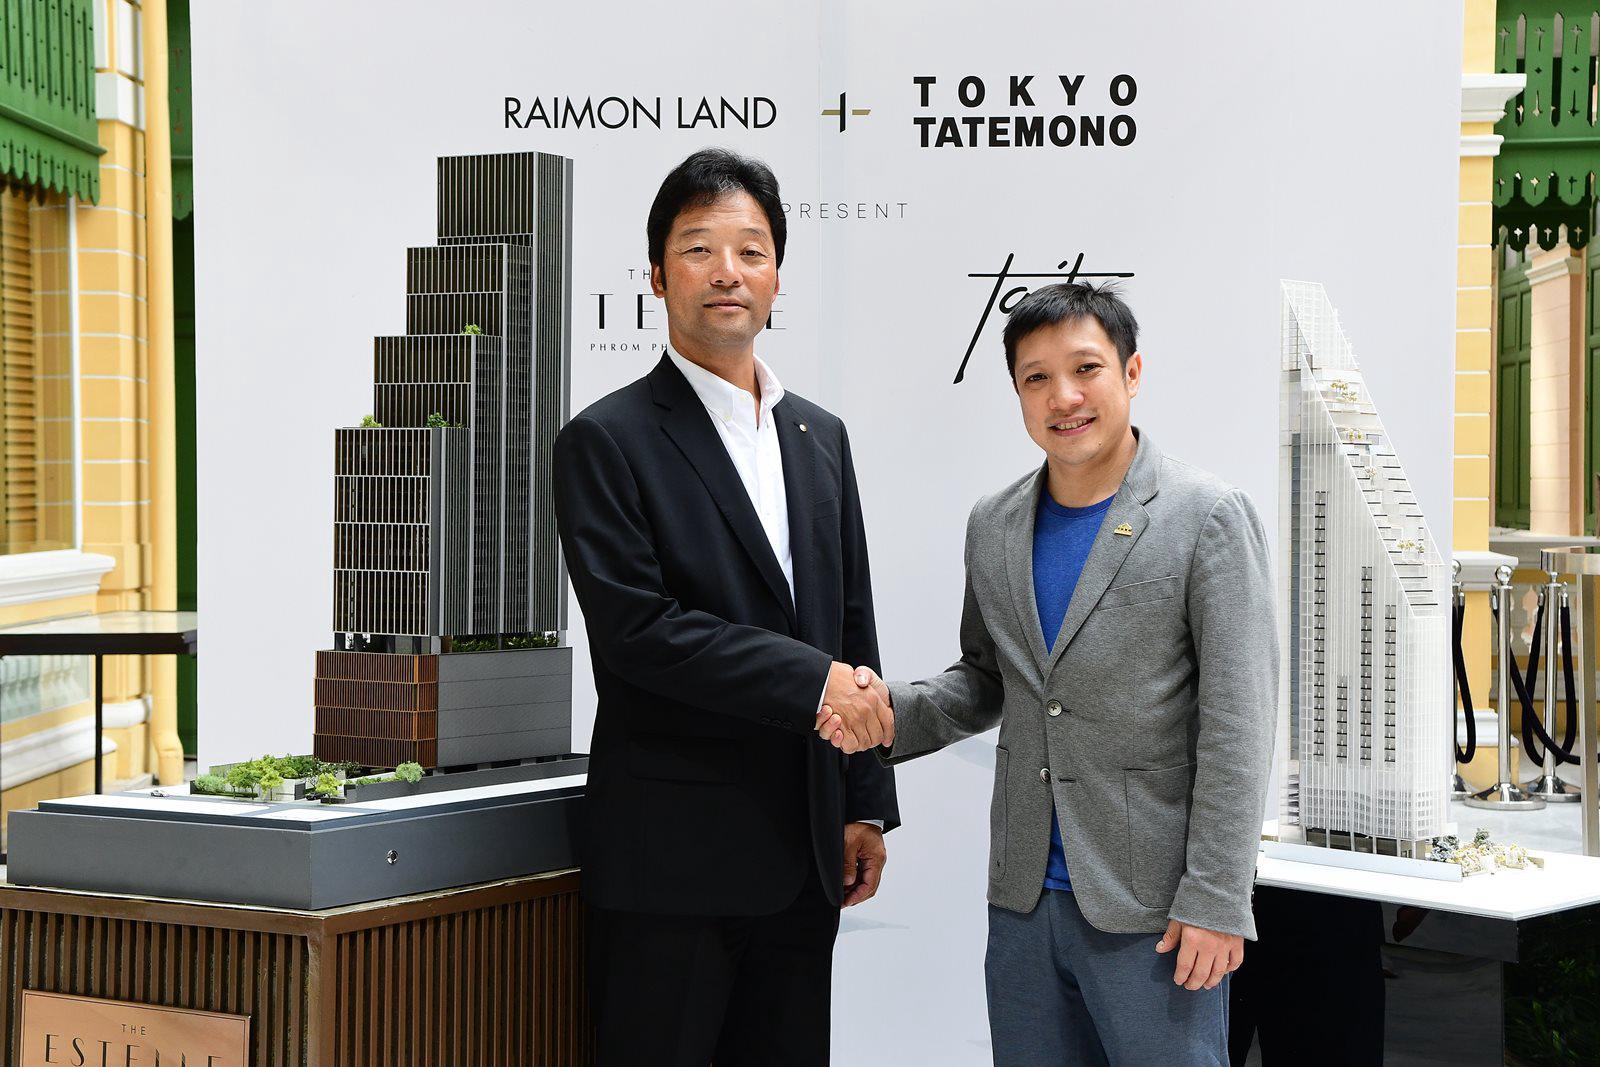 รูปบทความ ไรมอน แลนด์ ส่งท้ายปลายปีด้วย 2 คอนโดใหม่ "ดิ เอสเทลล์ พร้อมพงษ์" และ "เทตต์ ทเวลฟ์" ภายใต้ความร่วมมือ Tokyo Tatemono